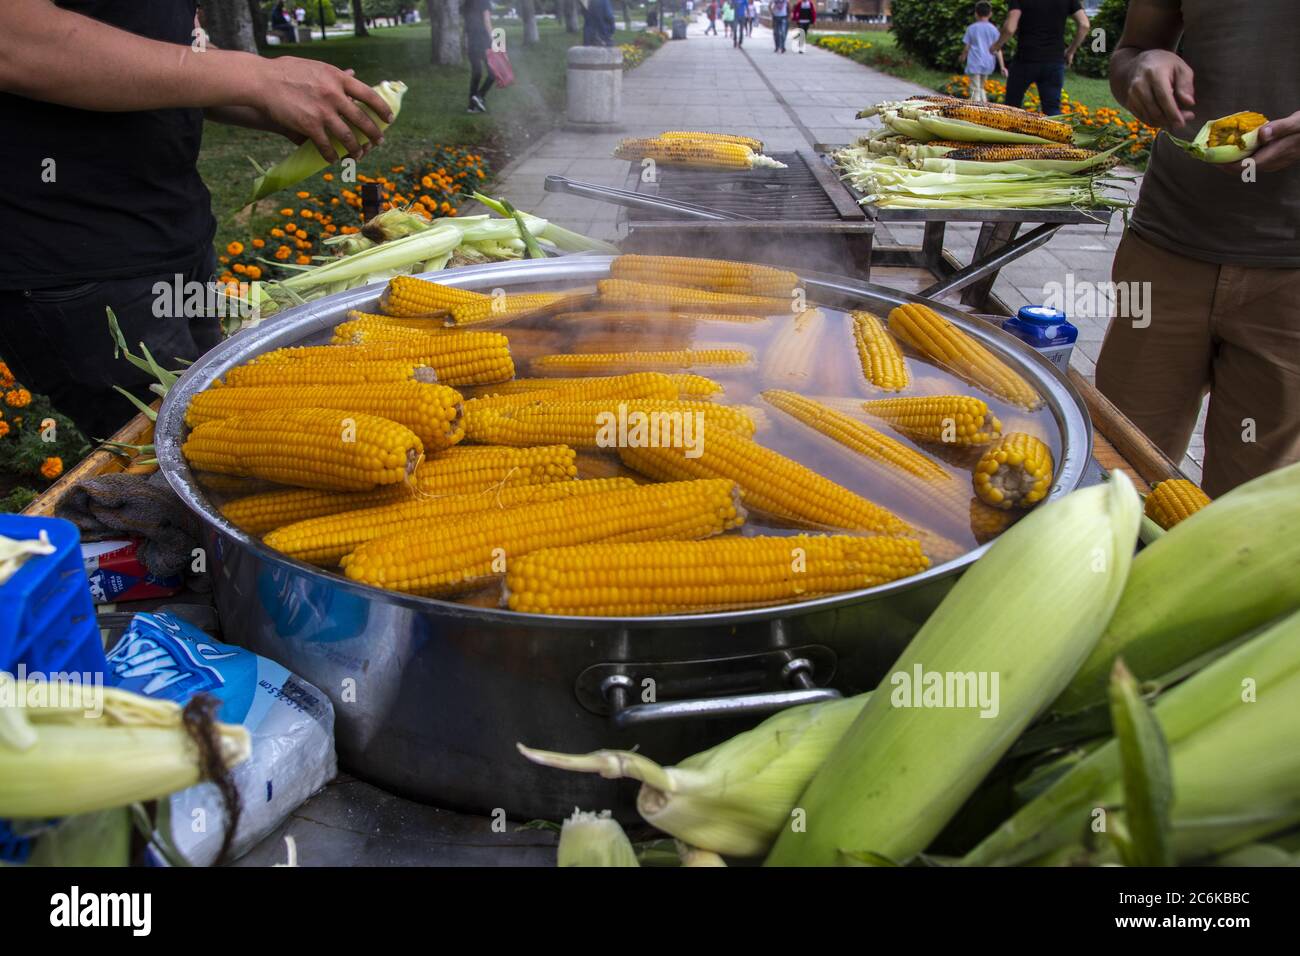 El vendedor vende maíz para turistas en la calle en Turquía Foto de stock